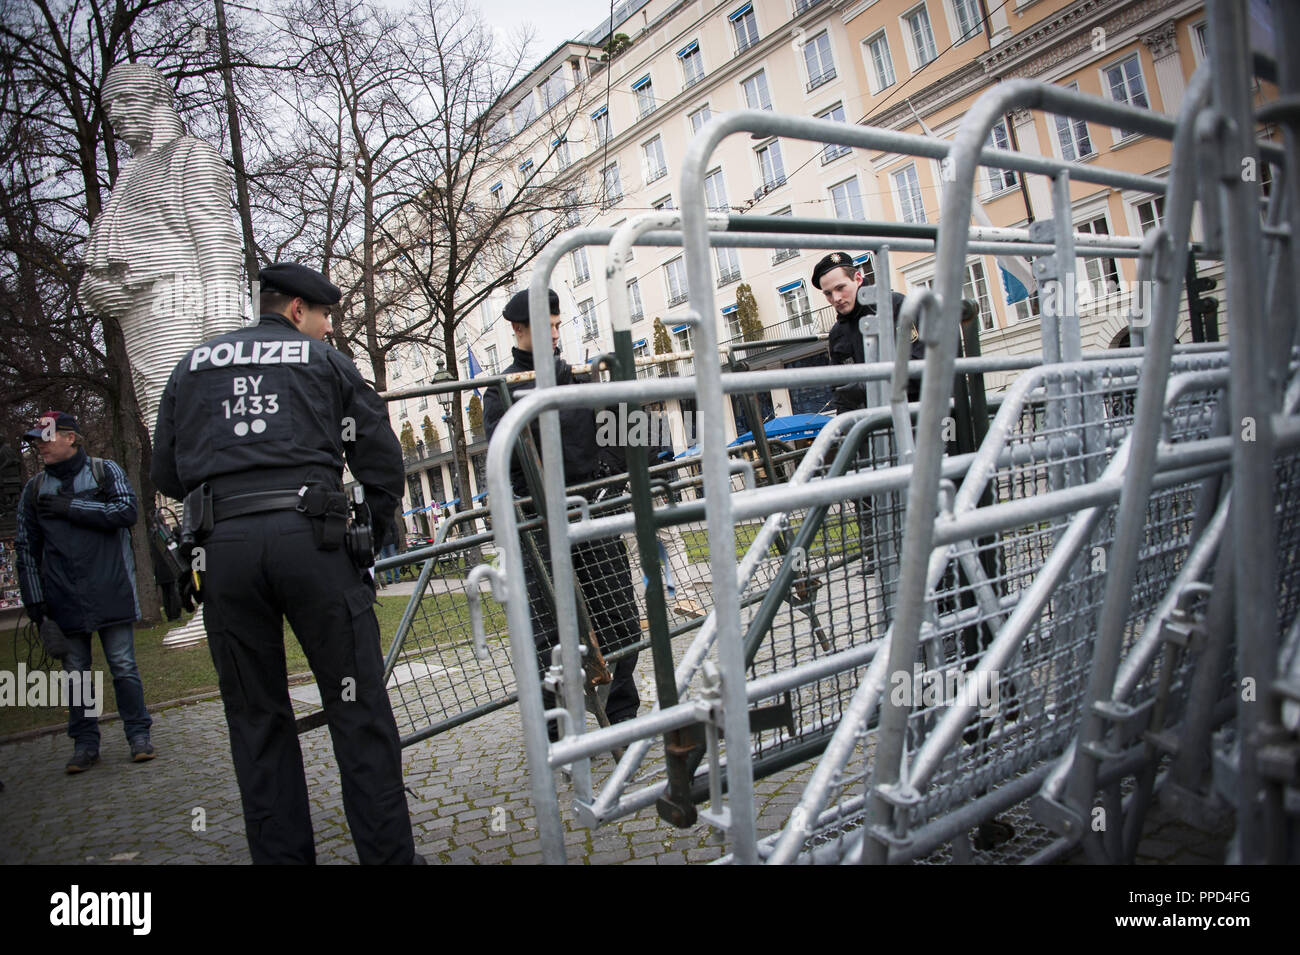 Errichtung von Barrieren um das Hotel 'Bayerischer Hof' am Promenadeplatz, der Polizei sind in Kraft hier aufgrund der Münchner Sicherheitskonferenz (SiKo). Stockfoto